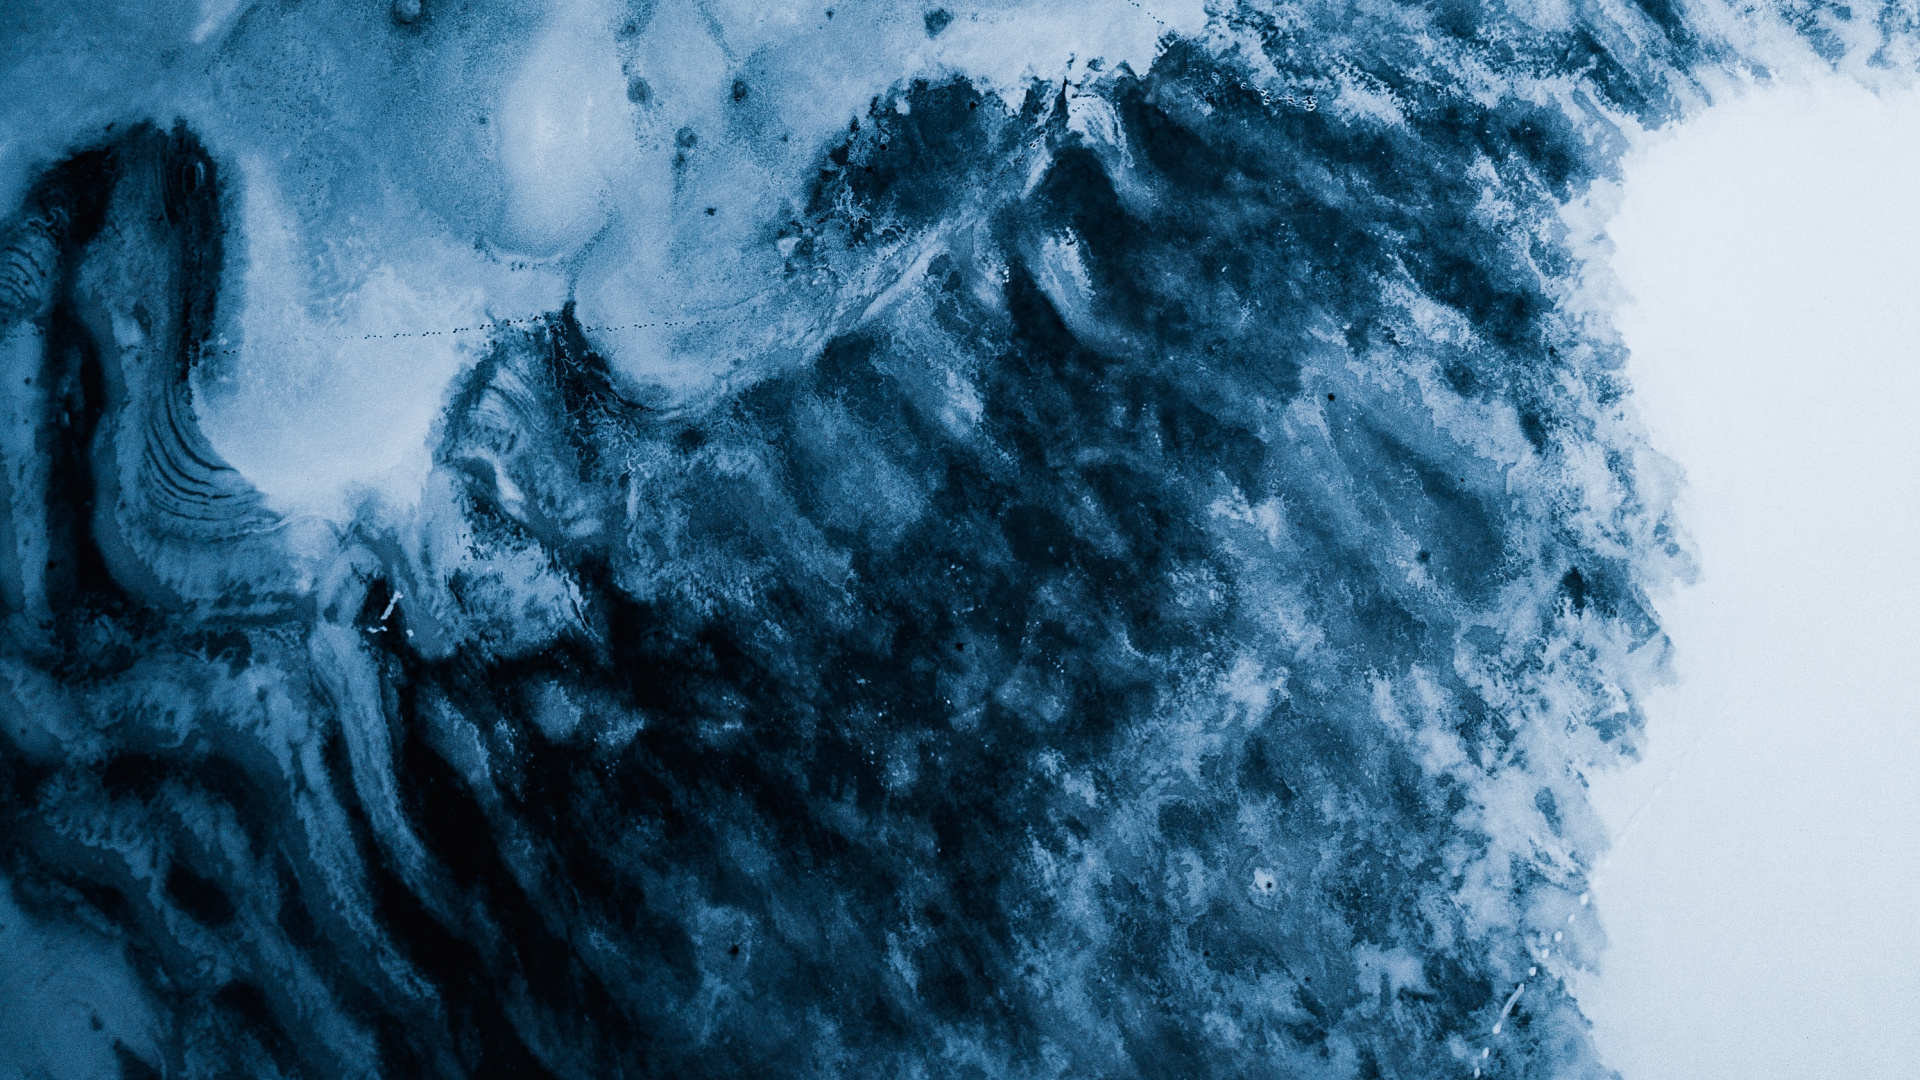 Gletscher, Blau, Wasser, Cloud, Einfrieren. Wallpaper in 1920x1080 Resolution